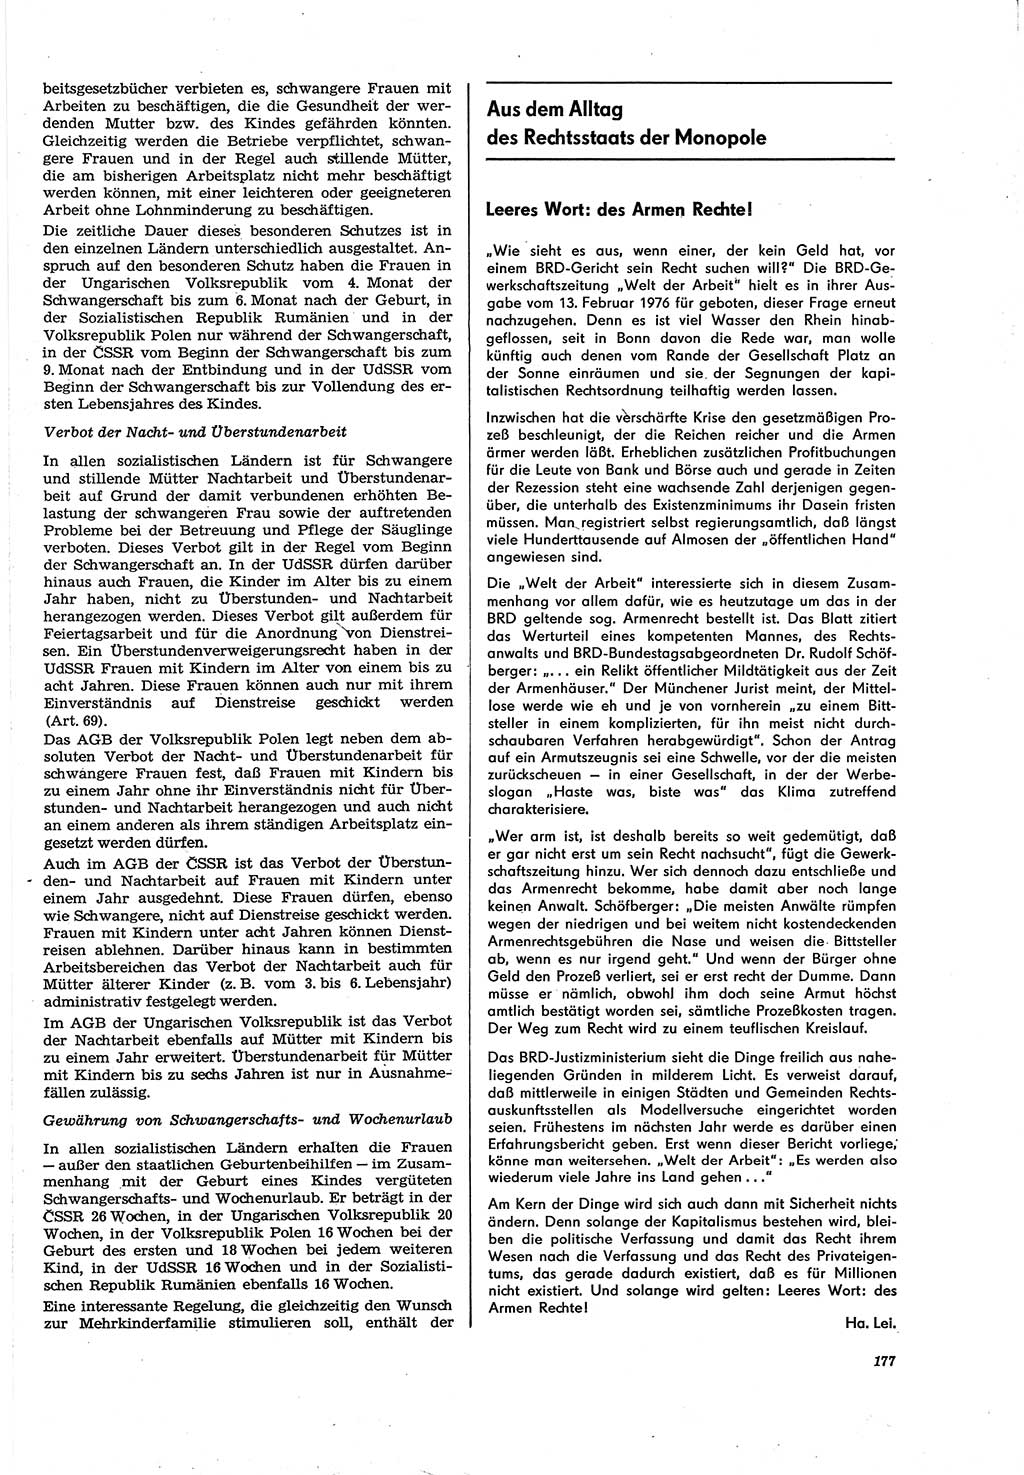 Neue Justiz (NJ), Zeitschrift für Recht und Rechtswissenschaft [Deutsche Demokratische Republik (DDR)], 30. Jahrgang 1976, Seite 177 (NJ DDR 1976, S. 177)